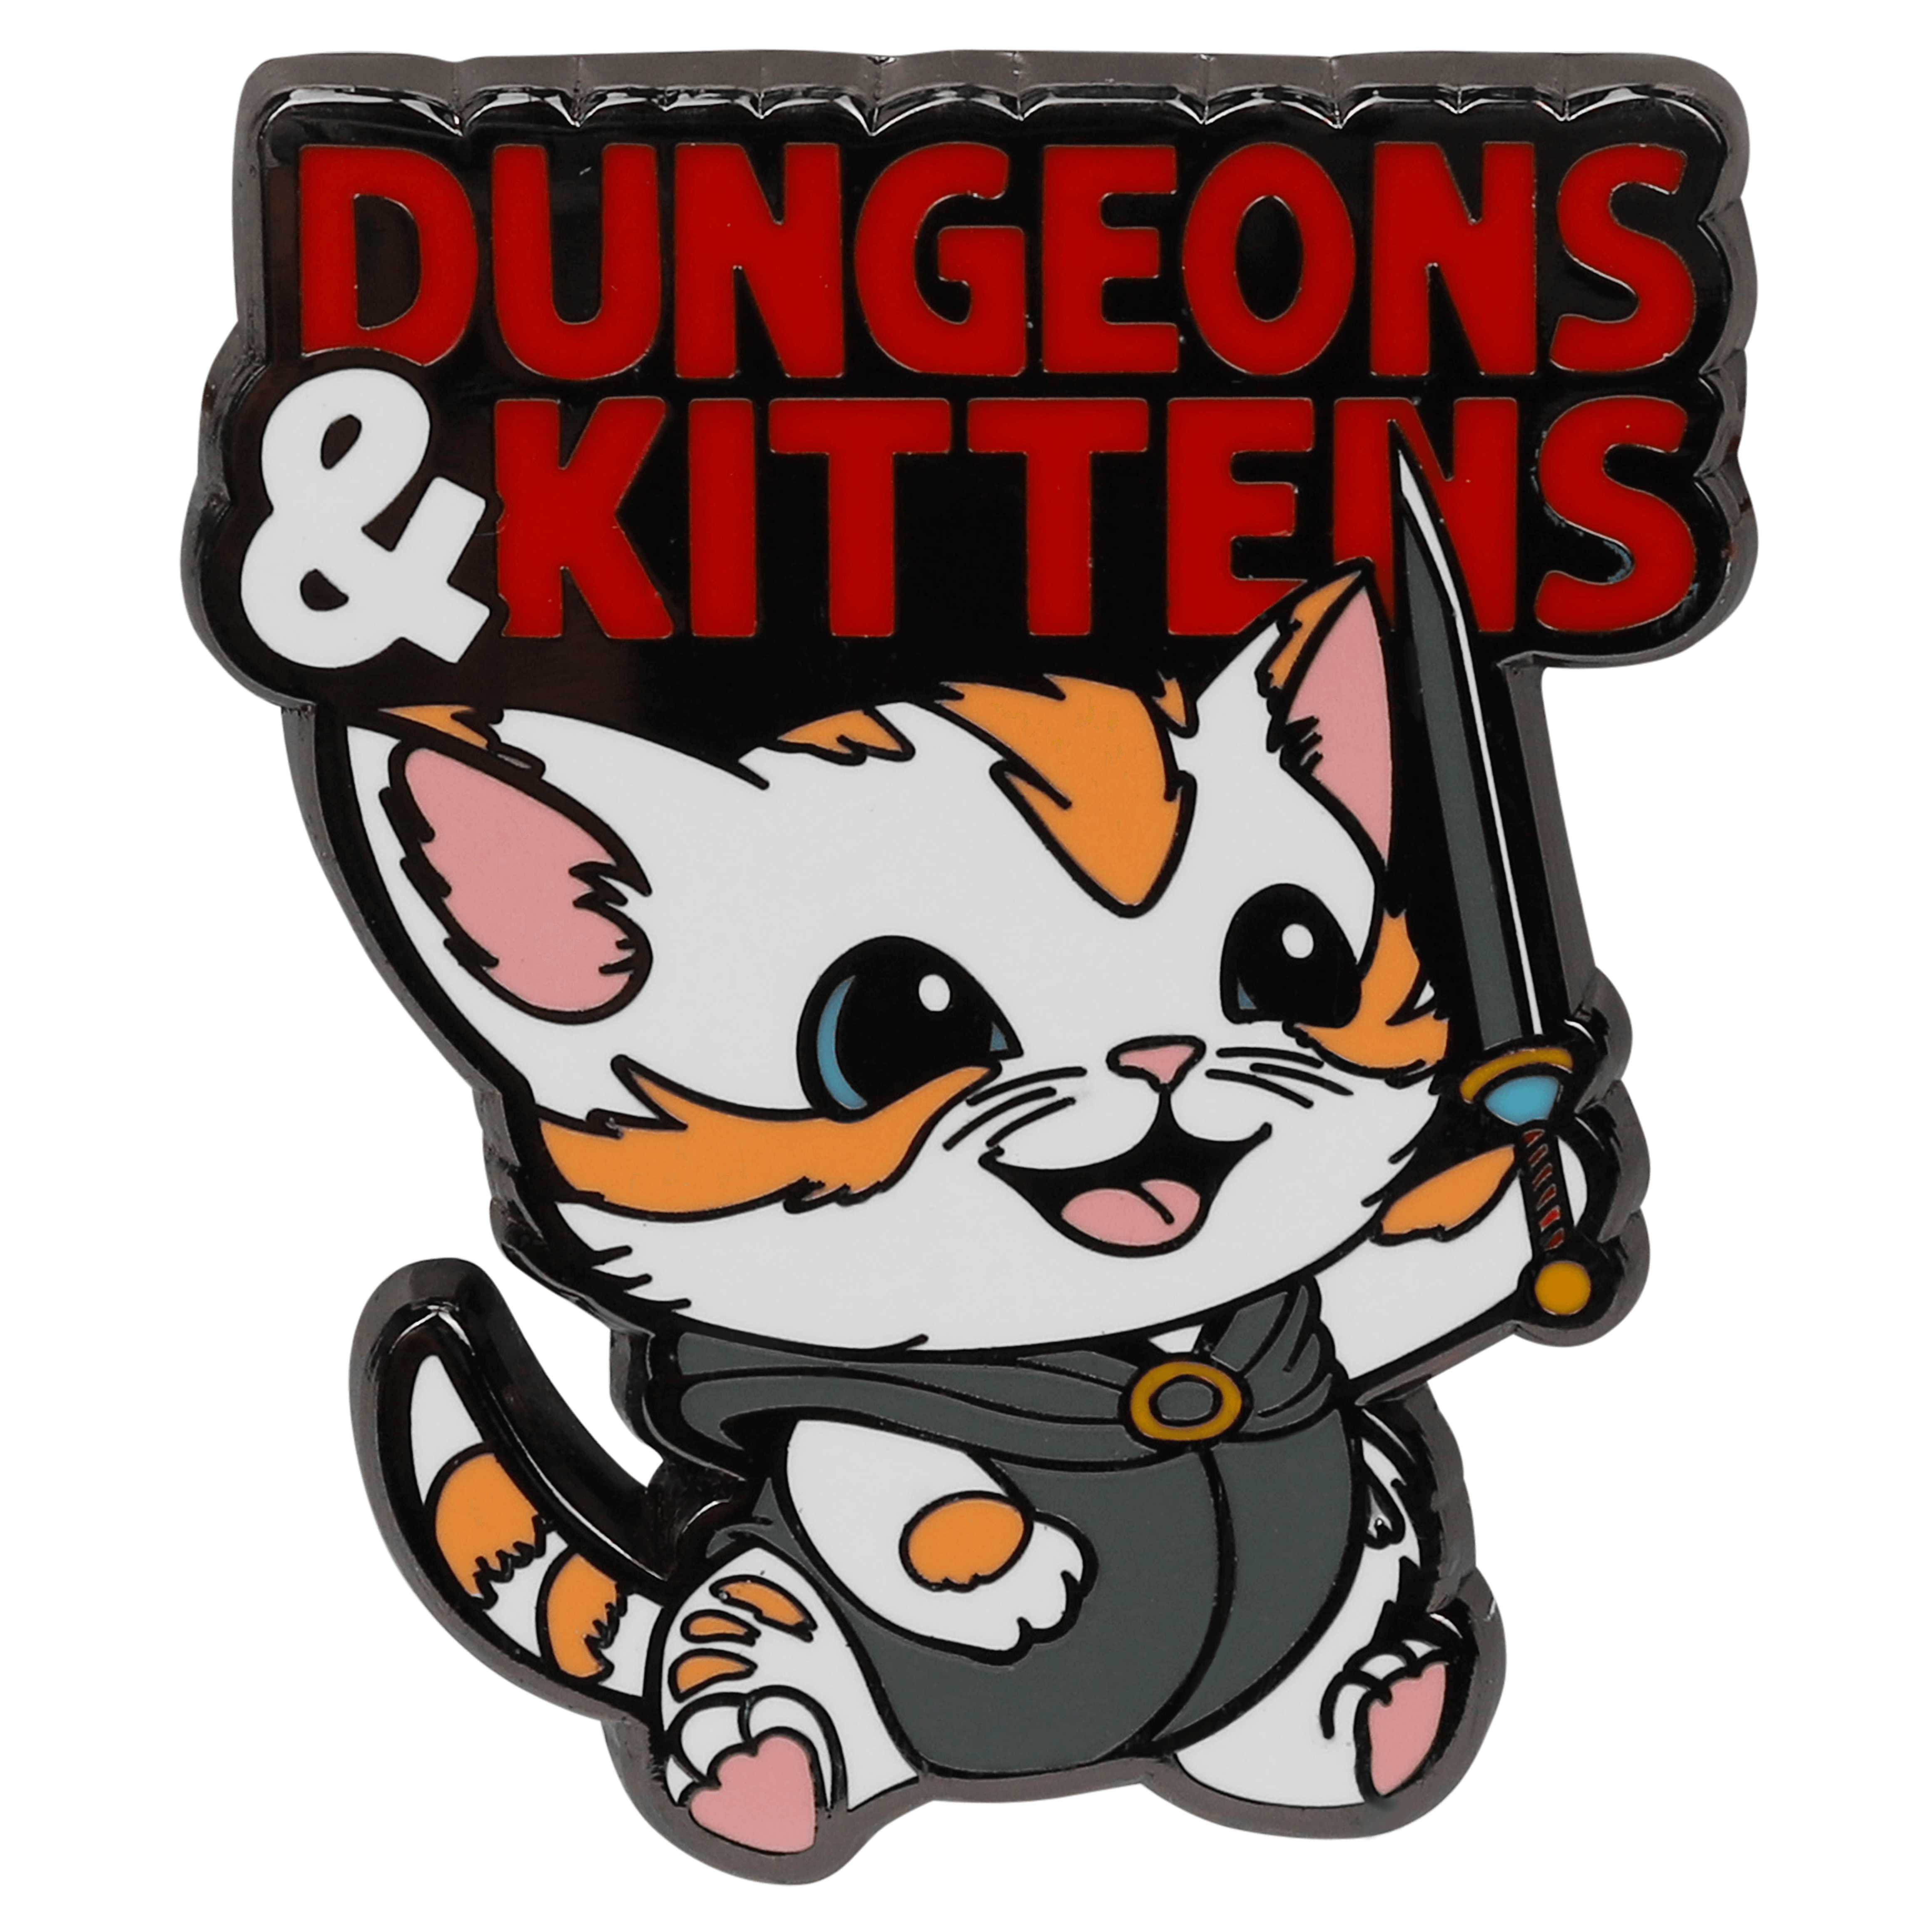 Dungeons & Kittens Pin - D&D / TTRPG Pin - Glassstaff